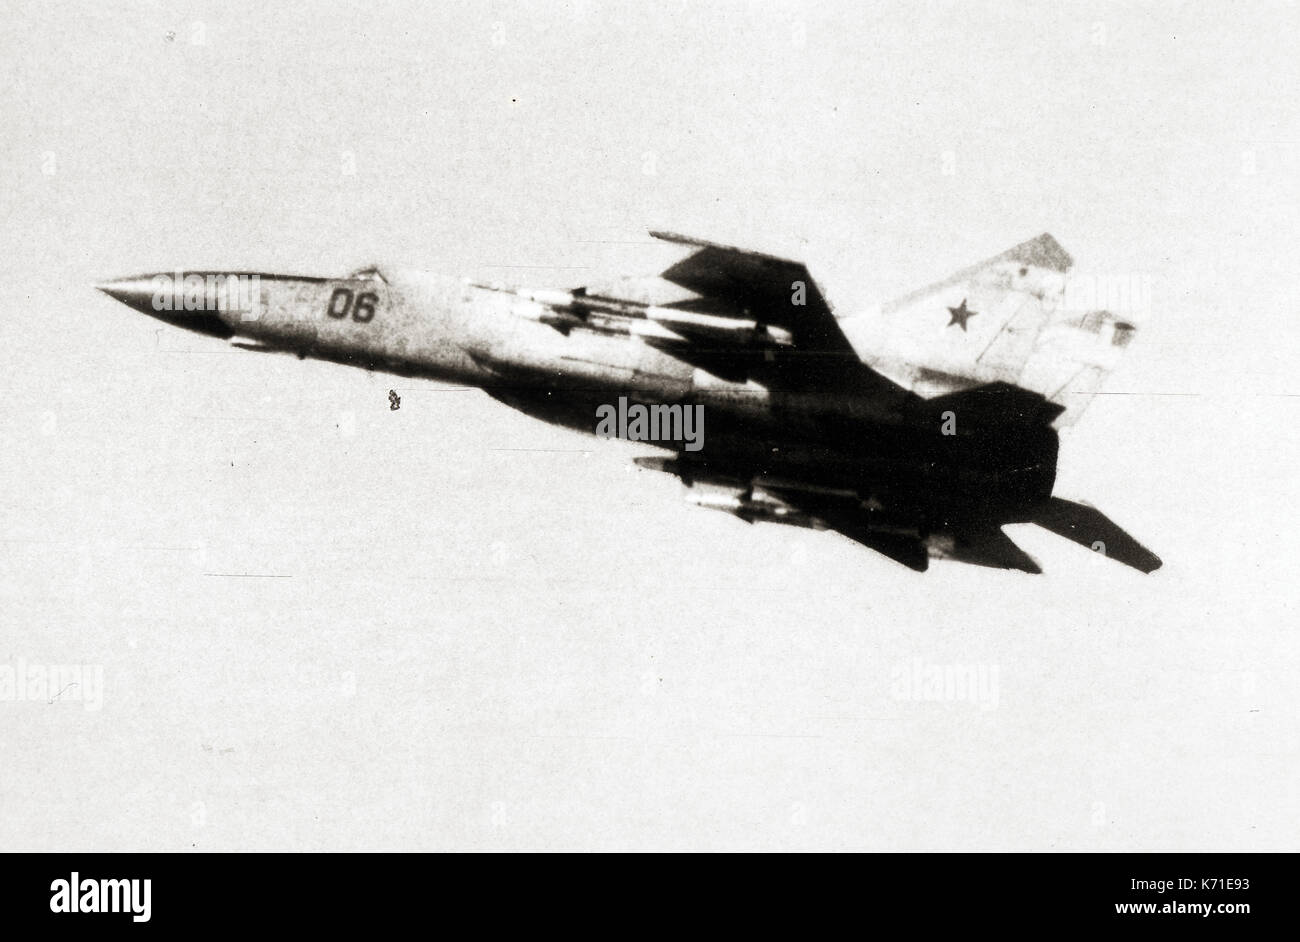 United States Department of Defense hat seine 1985 Bewertung der sowjetischen Militärmacht im Pentagon in Washington DC am 2. April 1985. Die Freigabe erklärt ist die MIG-25/FOXBAT E Interceptor (Bild) hat eine begrenzte Look-down/shoot-down-Funktion. Erwerb der westlichen Technologie aktiviert die UDSSR die MiG-31 Foxhound/Interceptor mit einer echten Look-down/shoot-down-Radar System passen." Quelle: Departement für Verteidigung über CNP/MediaPunch Stockfoto